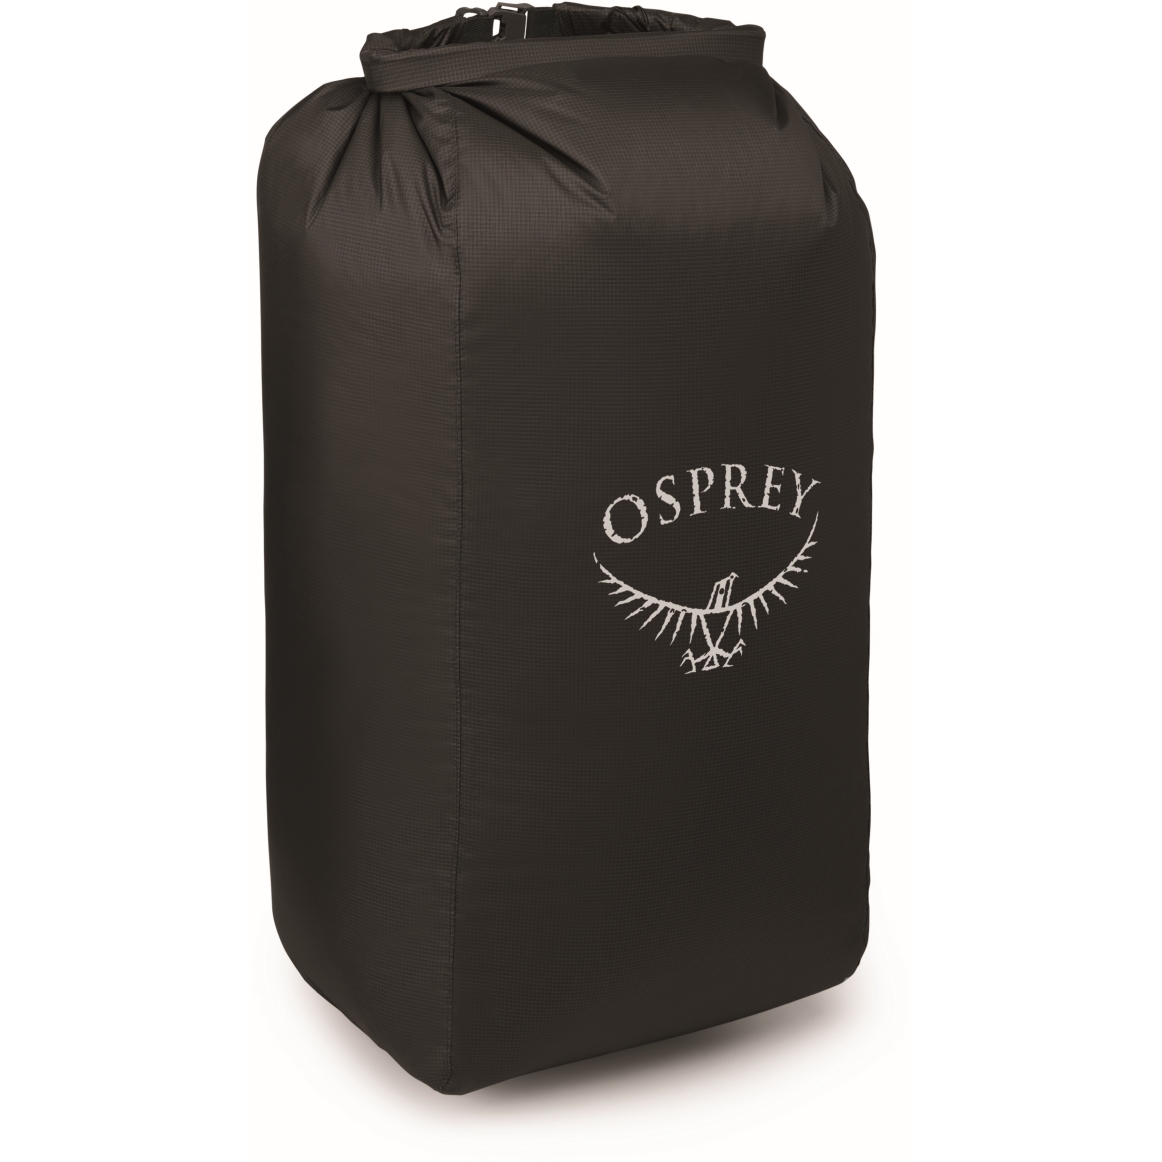 Produktbild von Osprey Ultralight Pack Liner M (50-70L) - Packsack - Schwarz